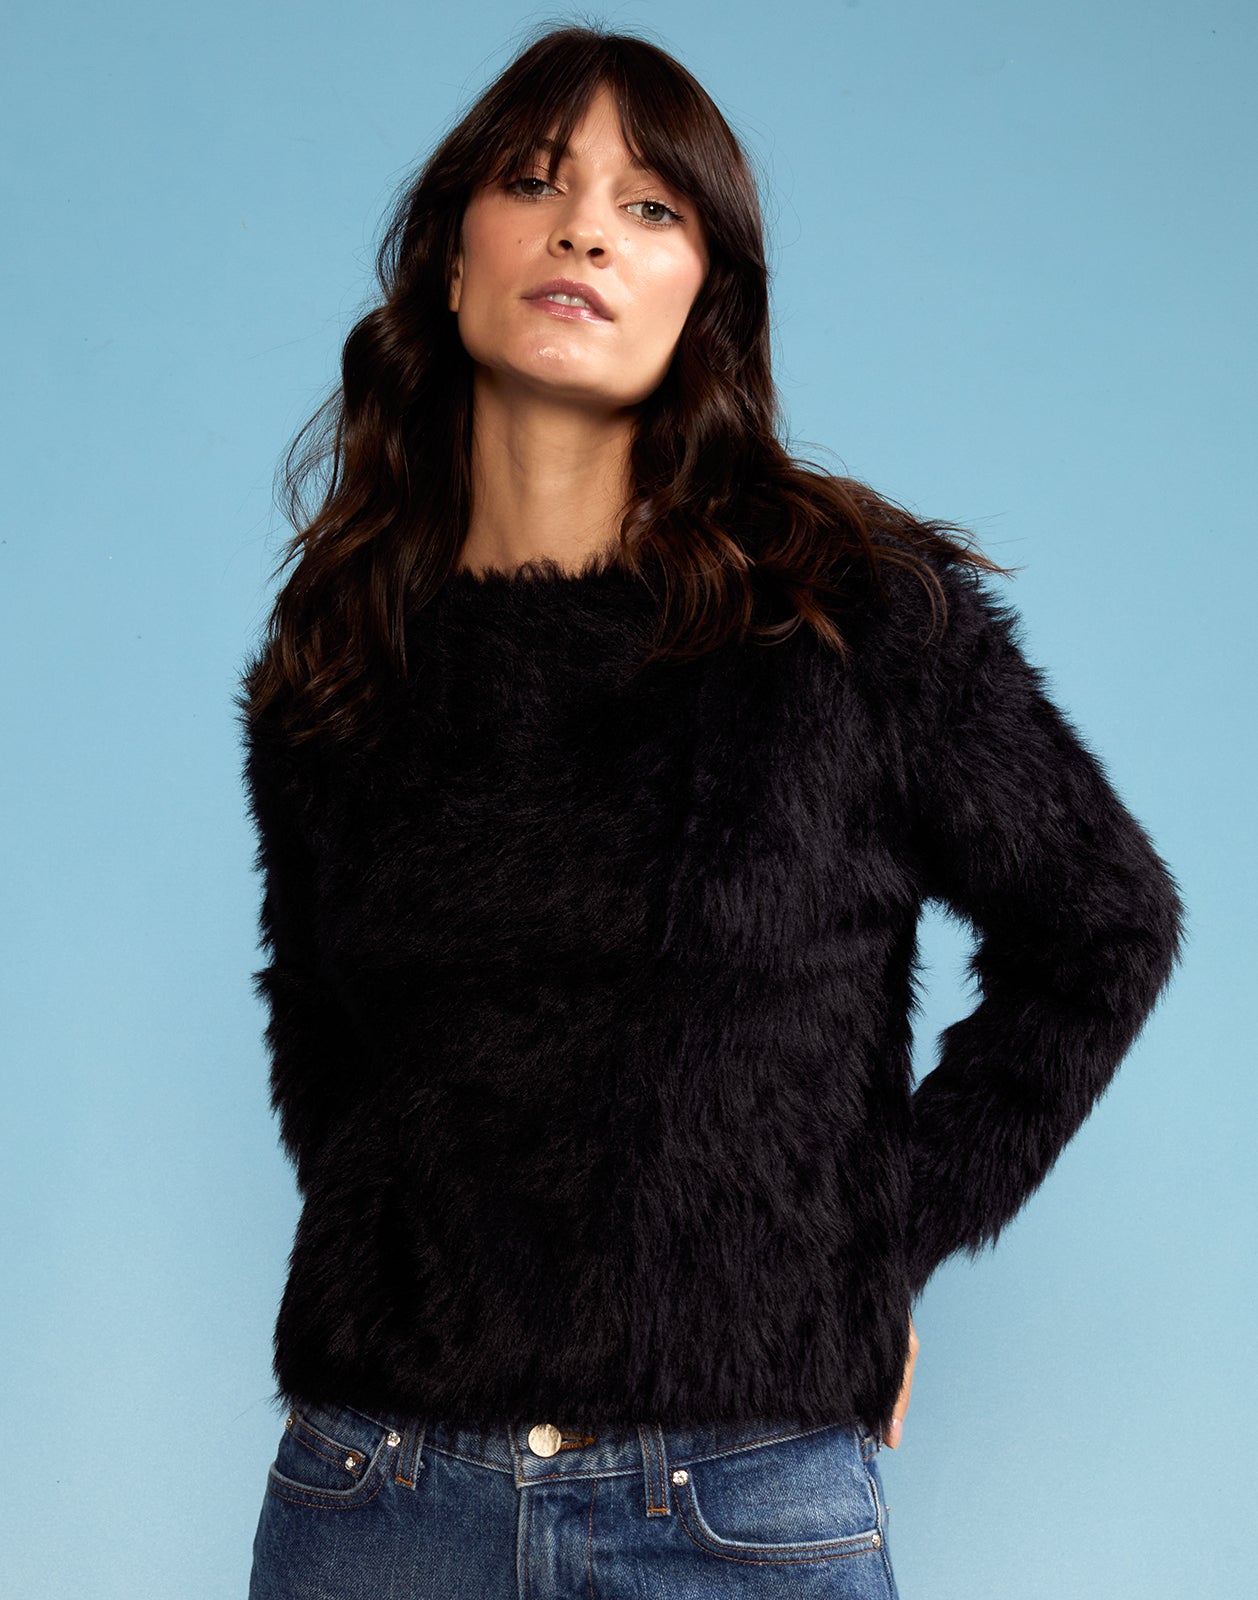 Fuzzy Sweater – Cynthia Rowley